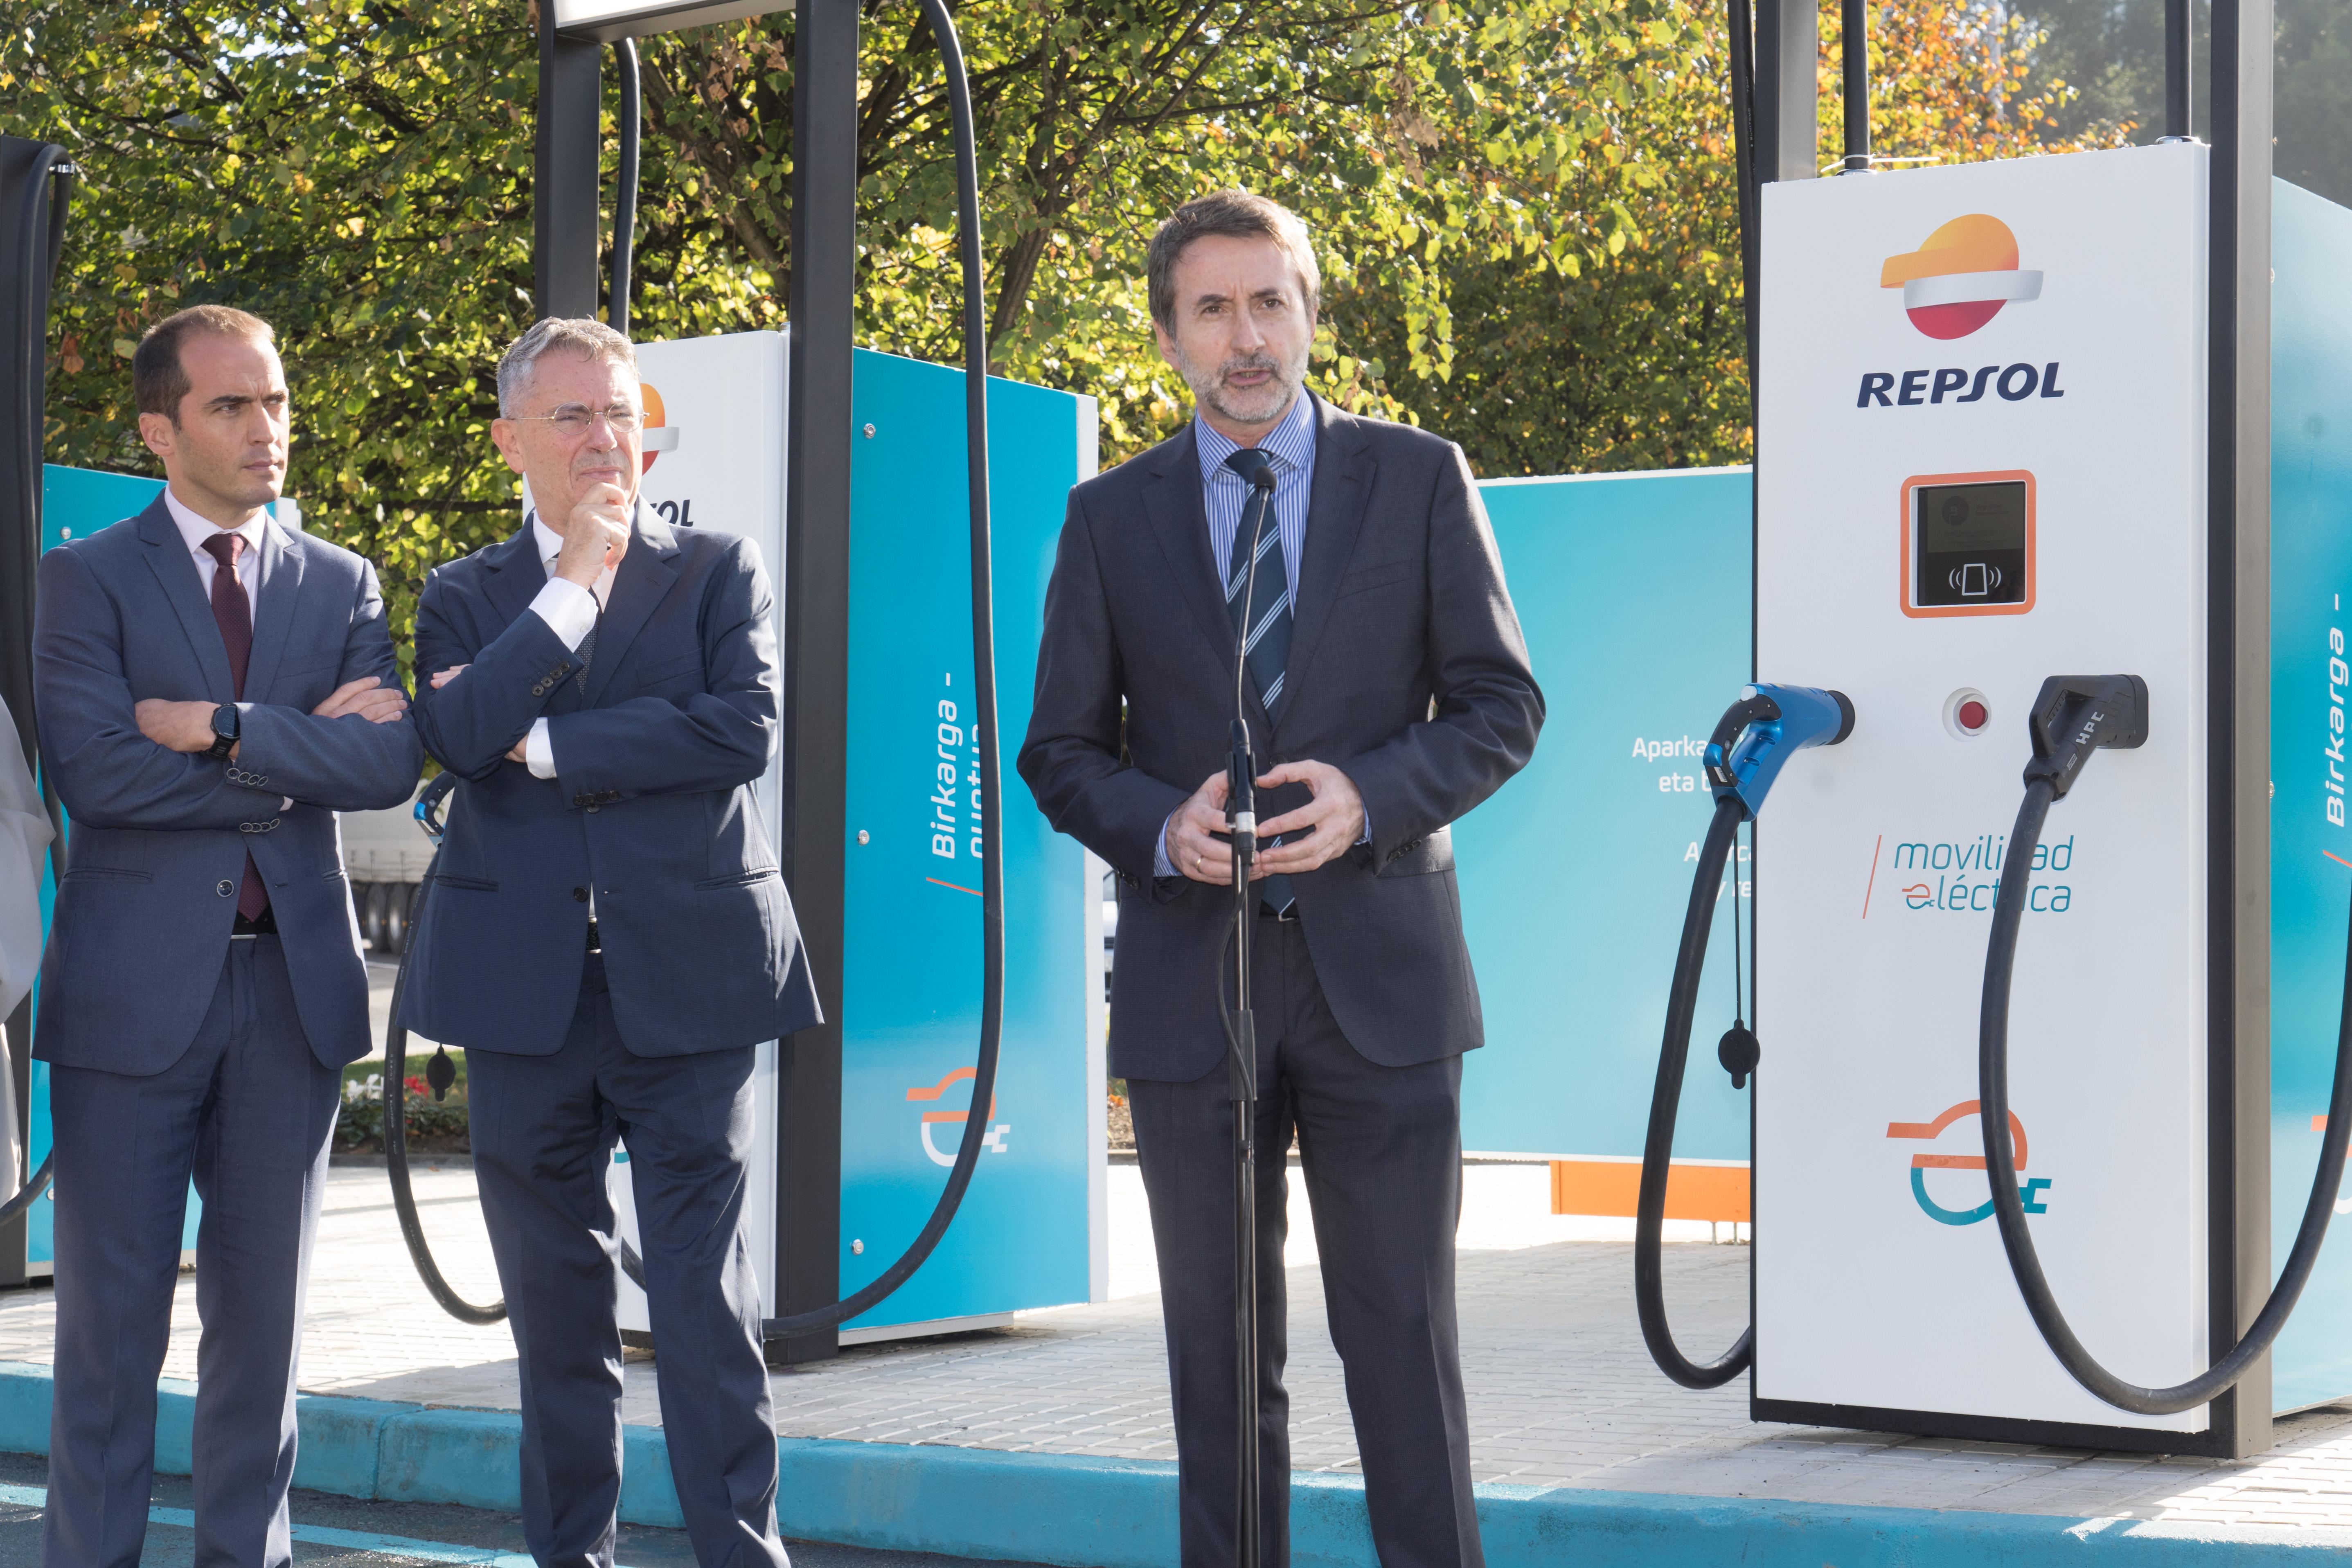 El Director General del Ente Vasco de la Energía, Íñigo Ansola; el Presidente de Ibil, Emiliano López Atxurra; y el Consejero Delegado de Repsol, Josu Jon Imaz.